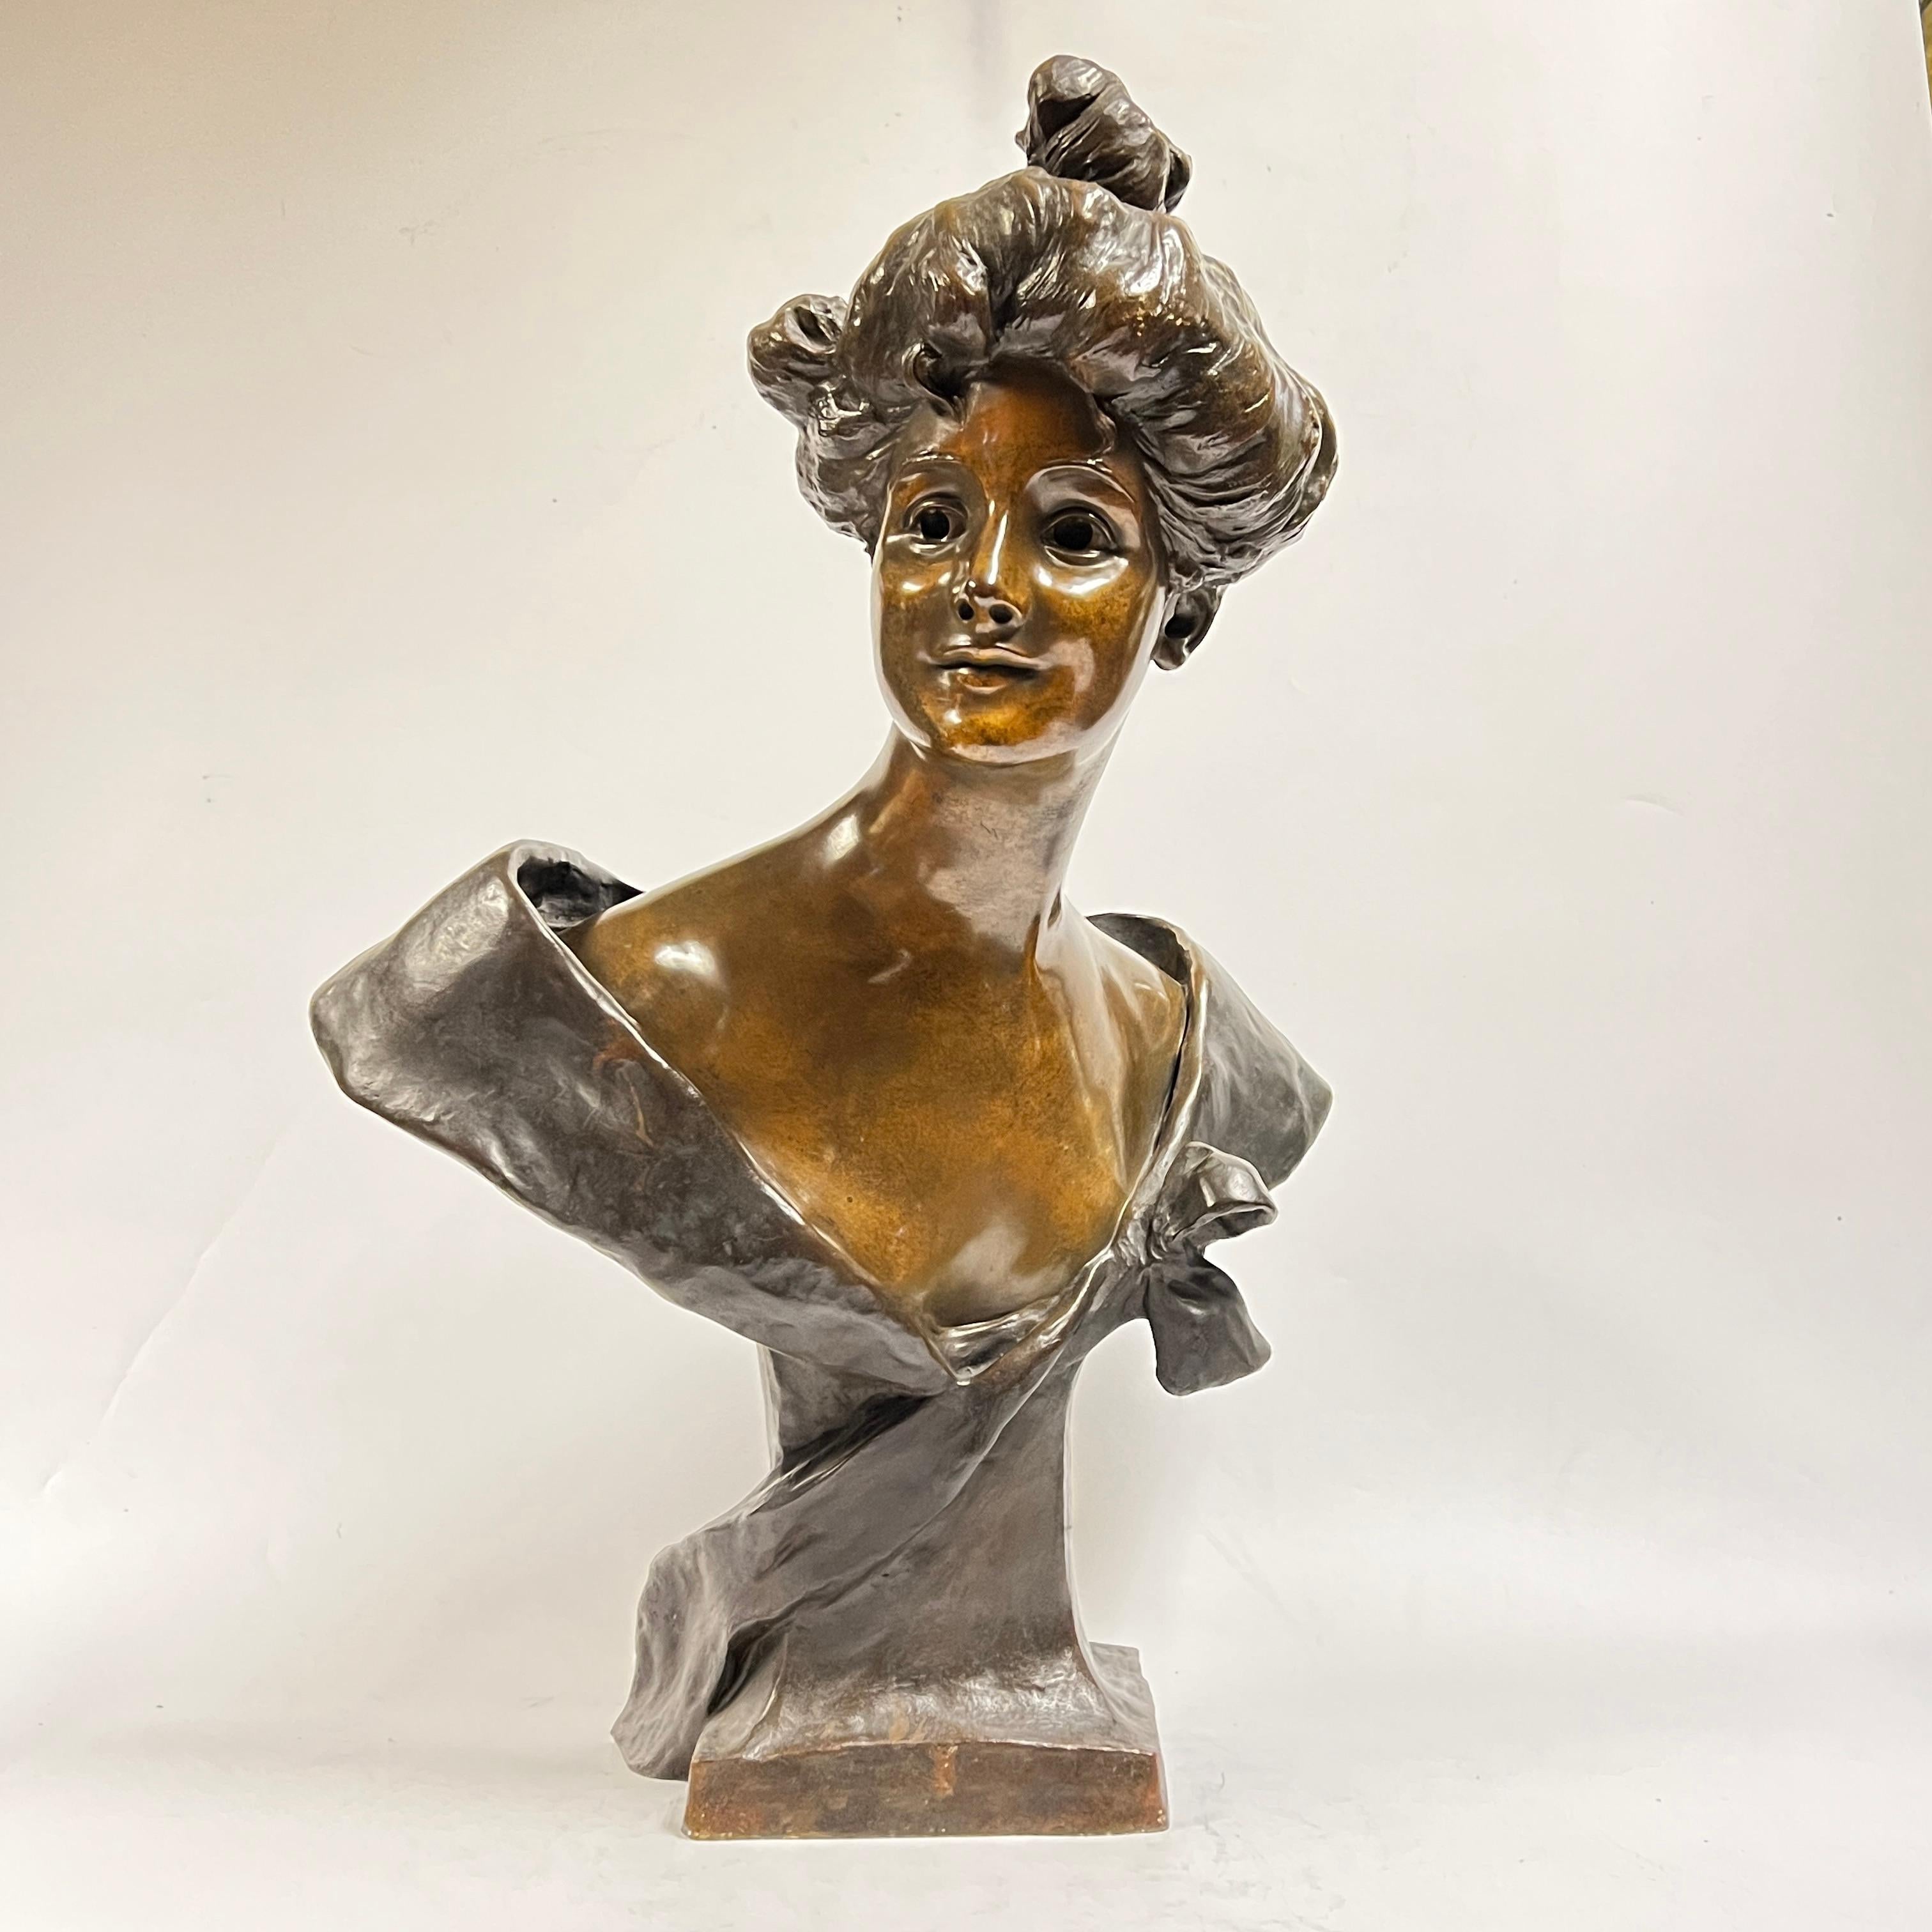 Grand buste de femme en bronze patiné d'époque Art Nouveau par George van der Straeten (1856-1928).